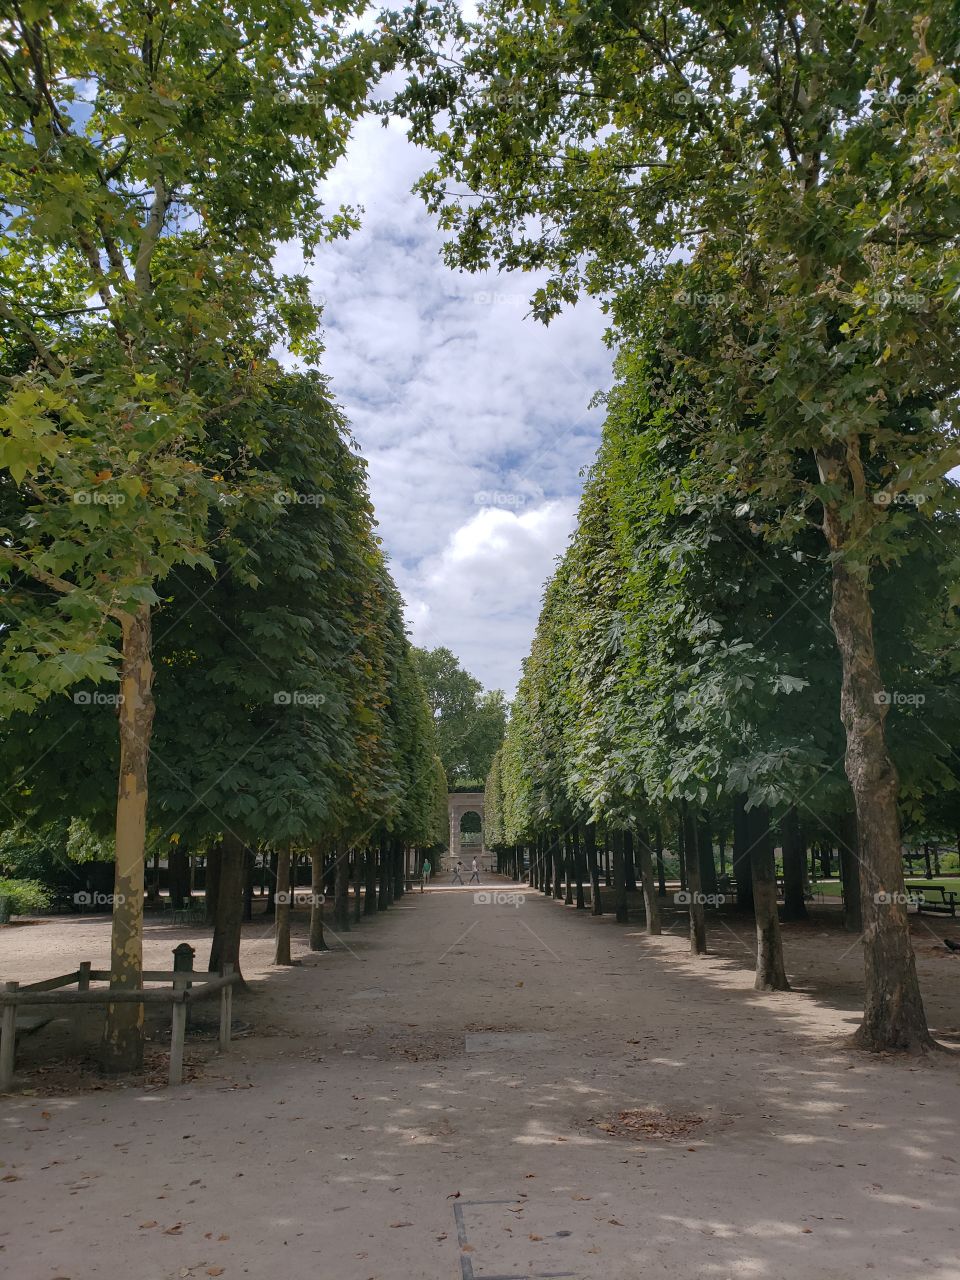 camino verde y solitario en un parque parisino